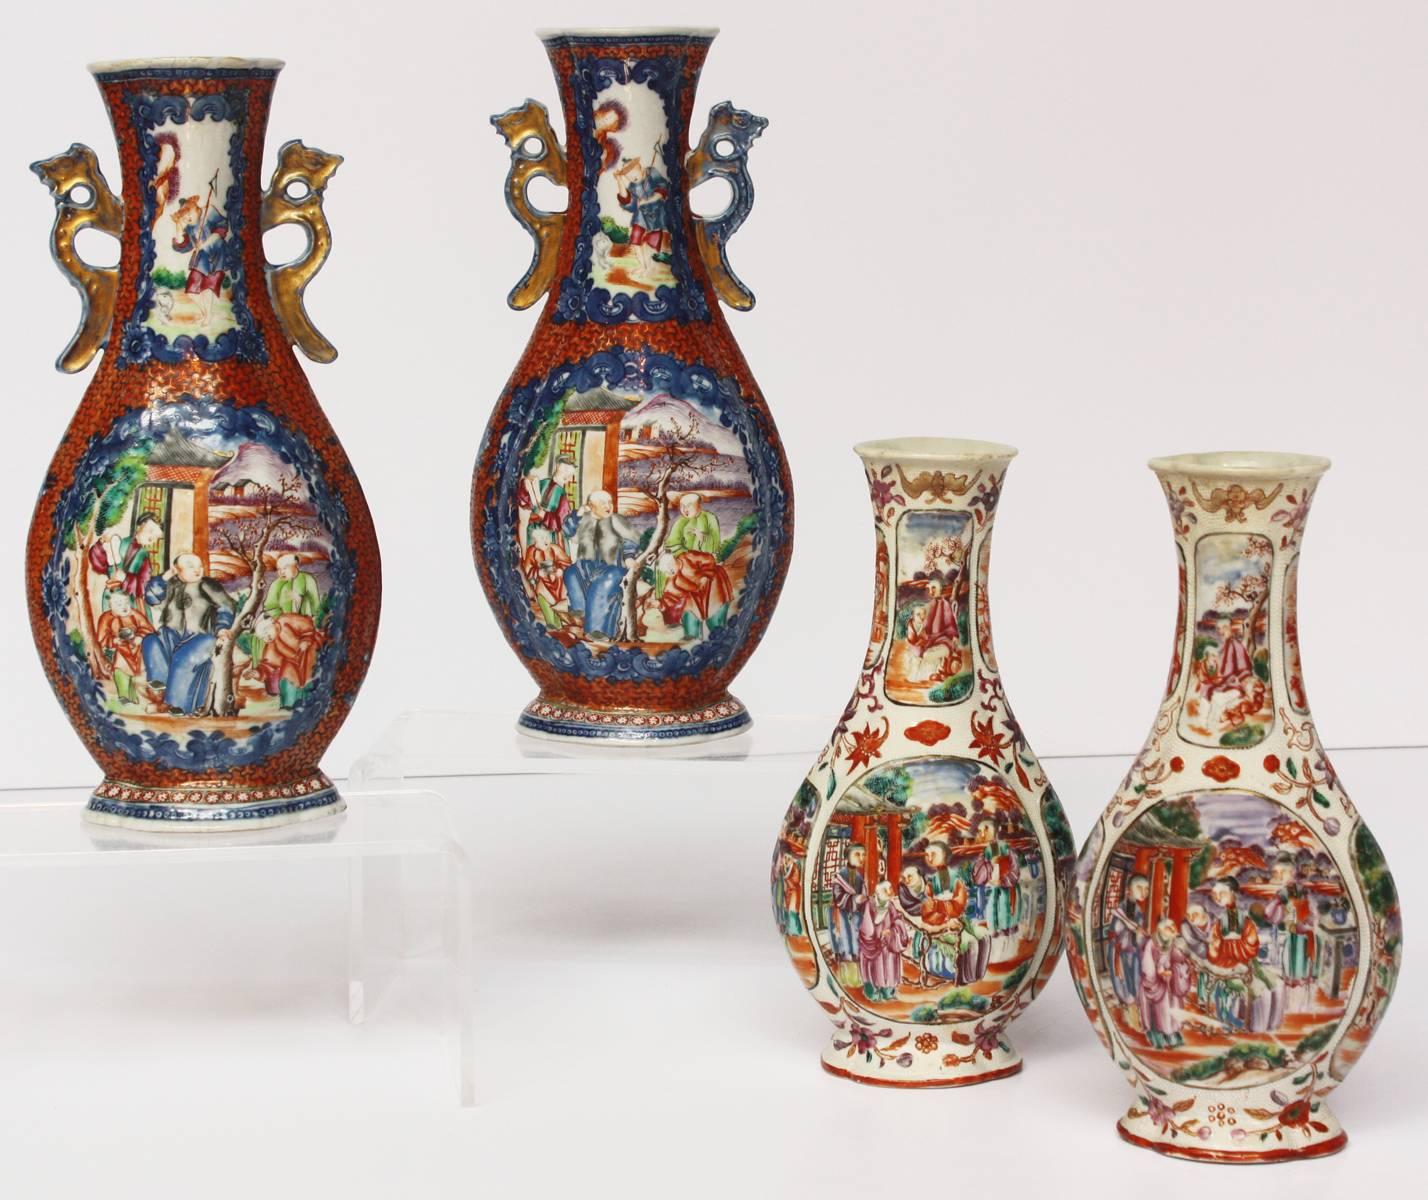 Auf der linken Seite:
Paar chinesische Mandarin-Palettenvasen aus dem frühen 18. Jahrhundert, dekoriert mit verschiedenen Szenen und vergoldeten Henkeln (am Hals), orangefarbener Grund mit blauen Rändern um die Szenen.

Maße: 11,5